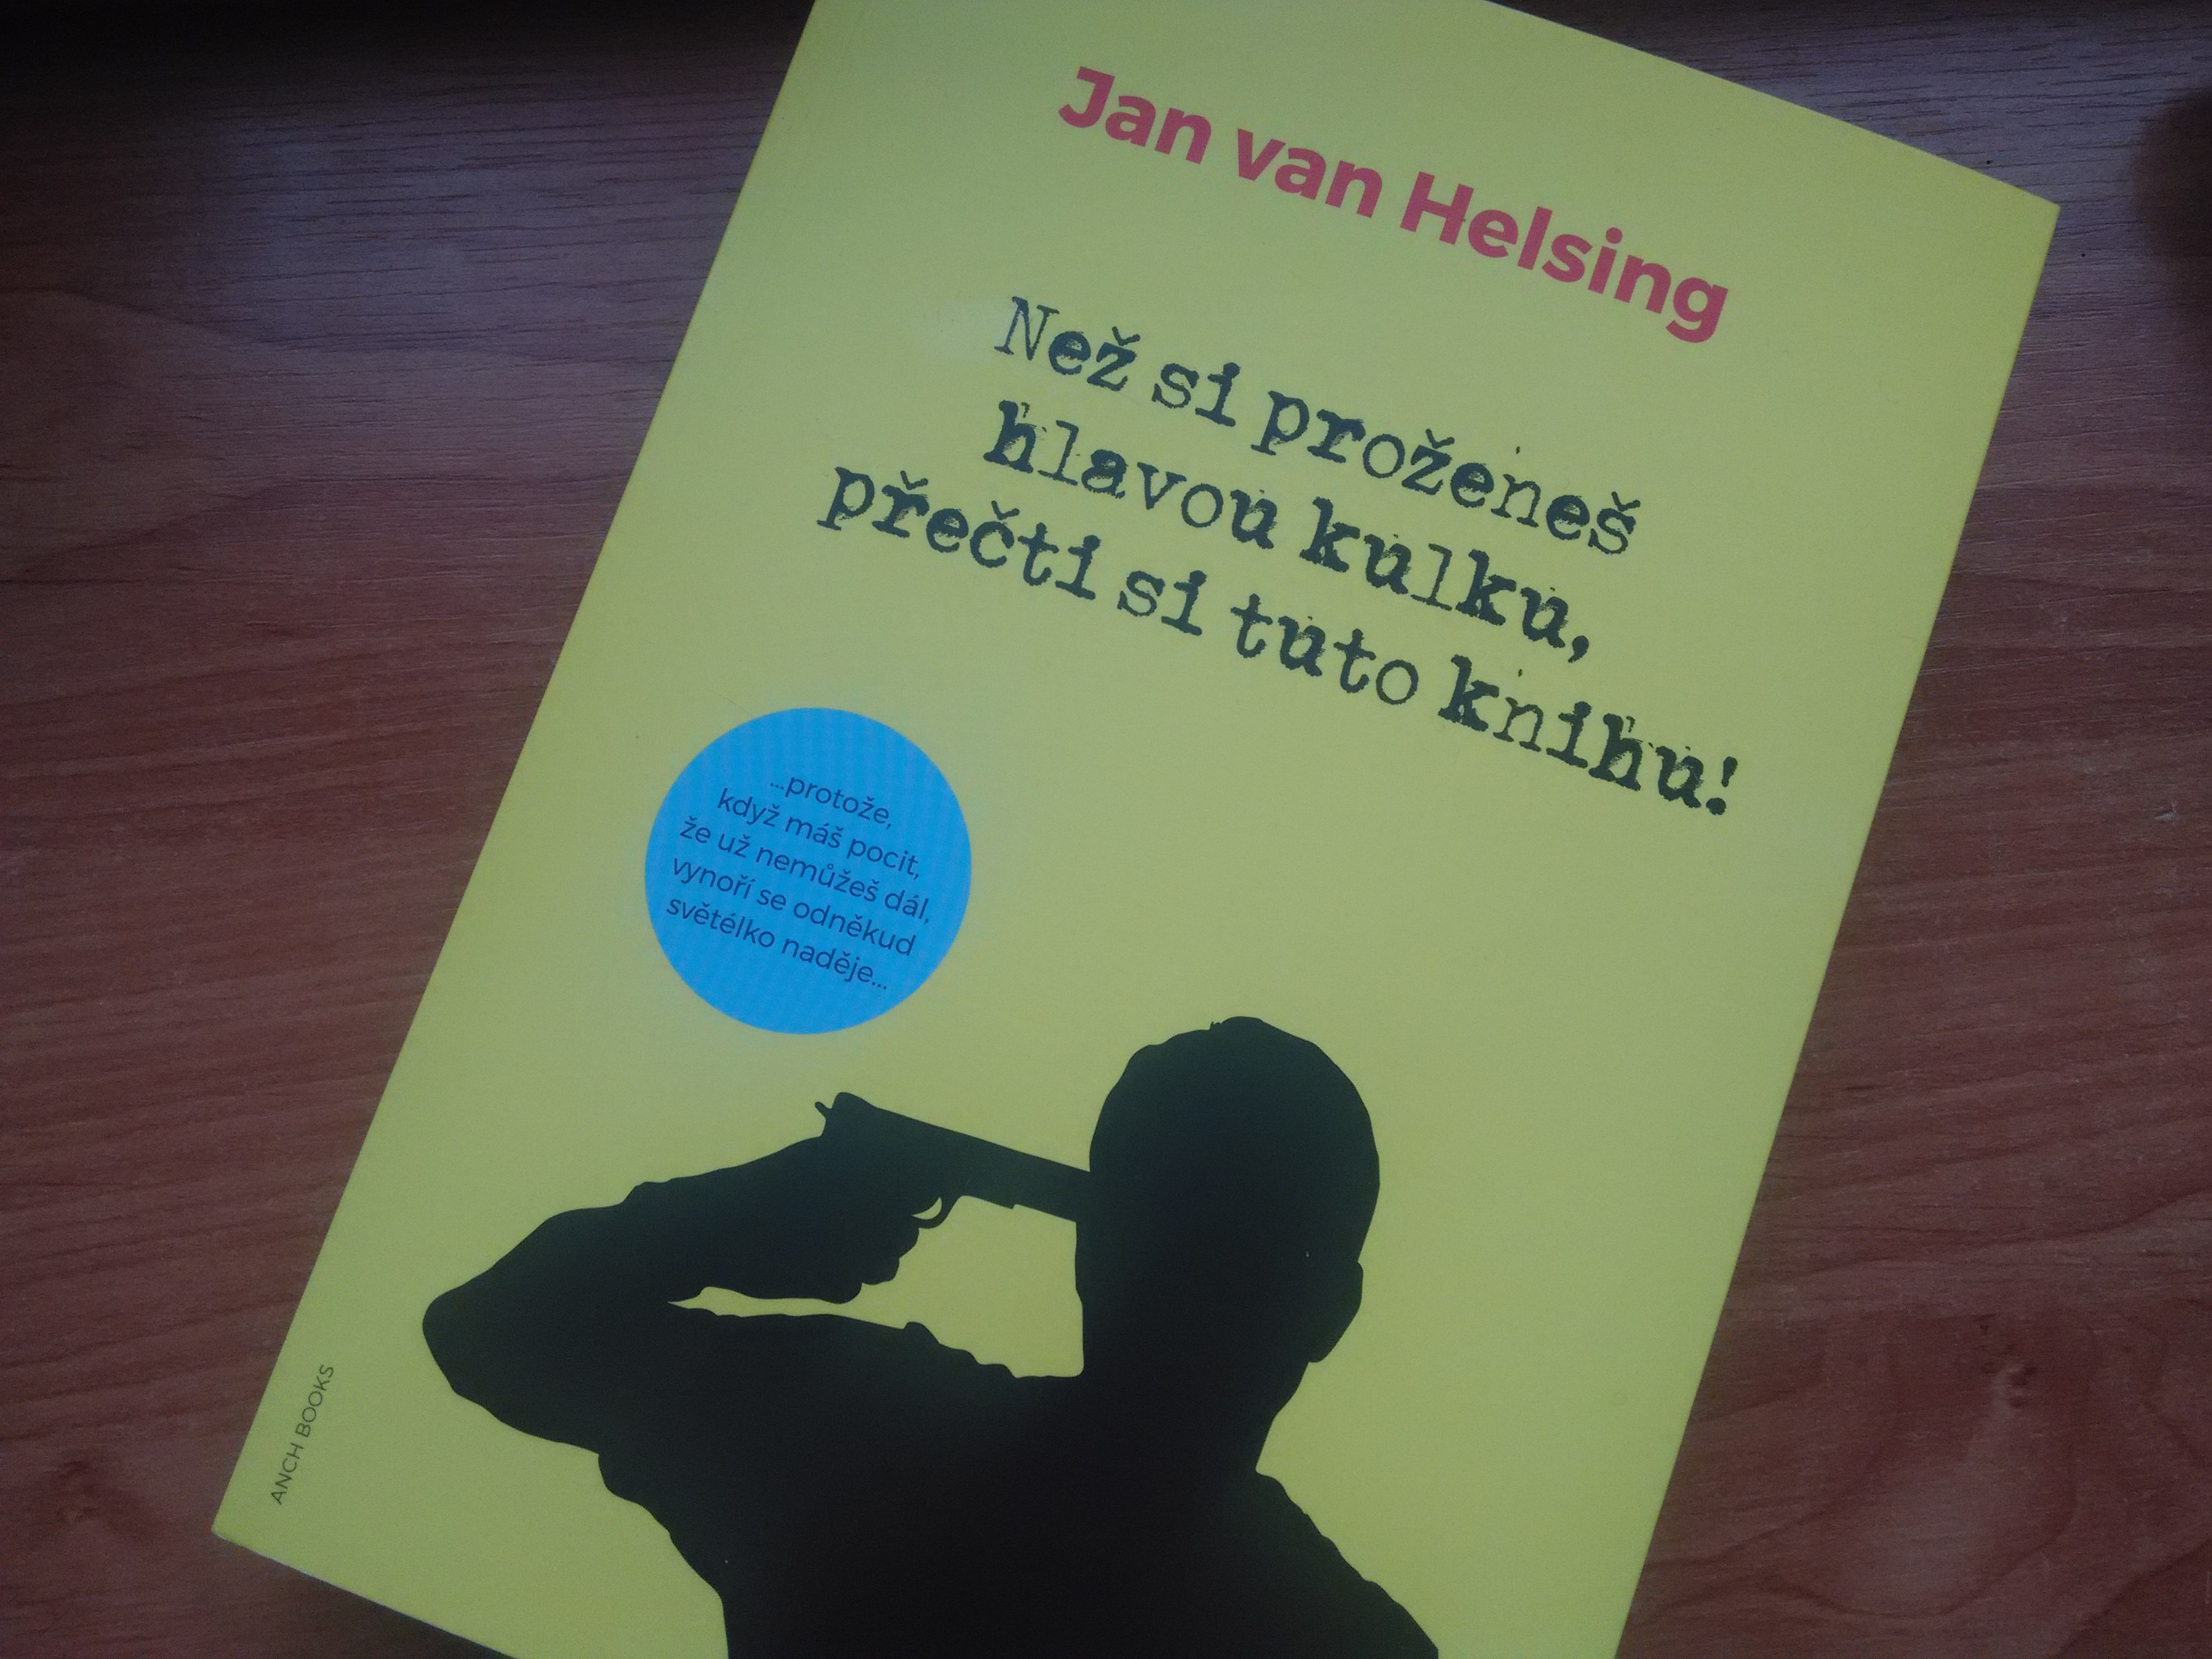 Jan van Helsing